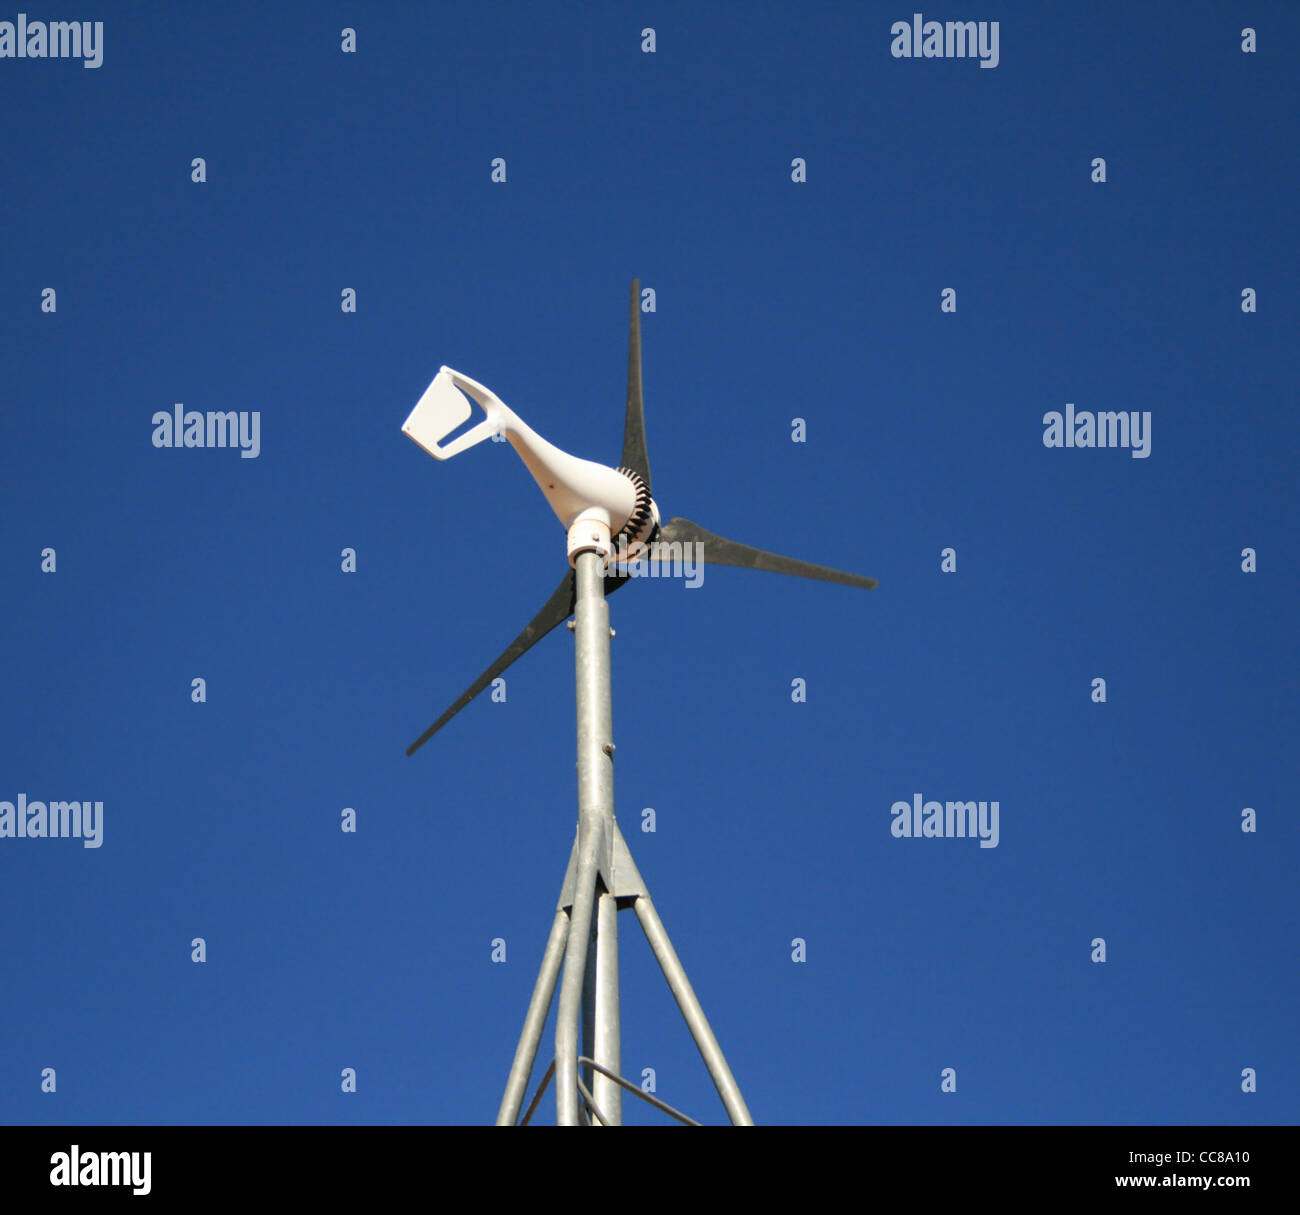 Petit moulin électrique contre un ciel bleu Photo Stock - Alamy